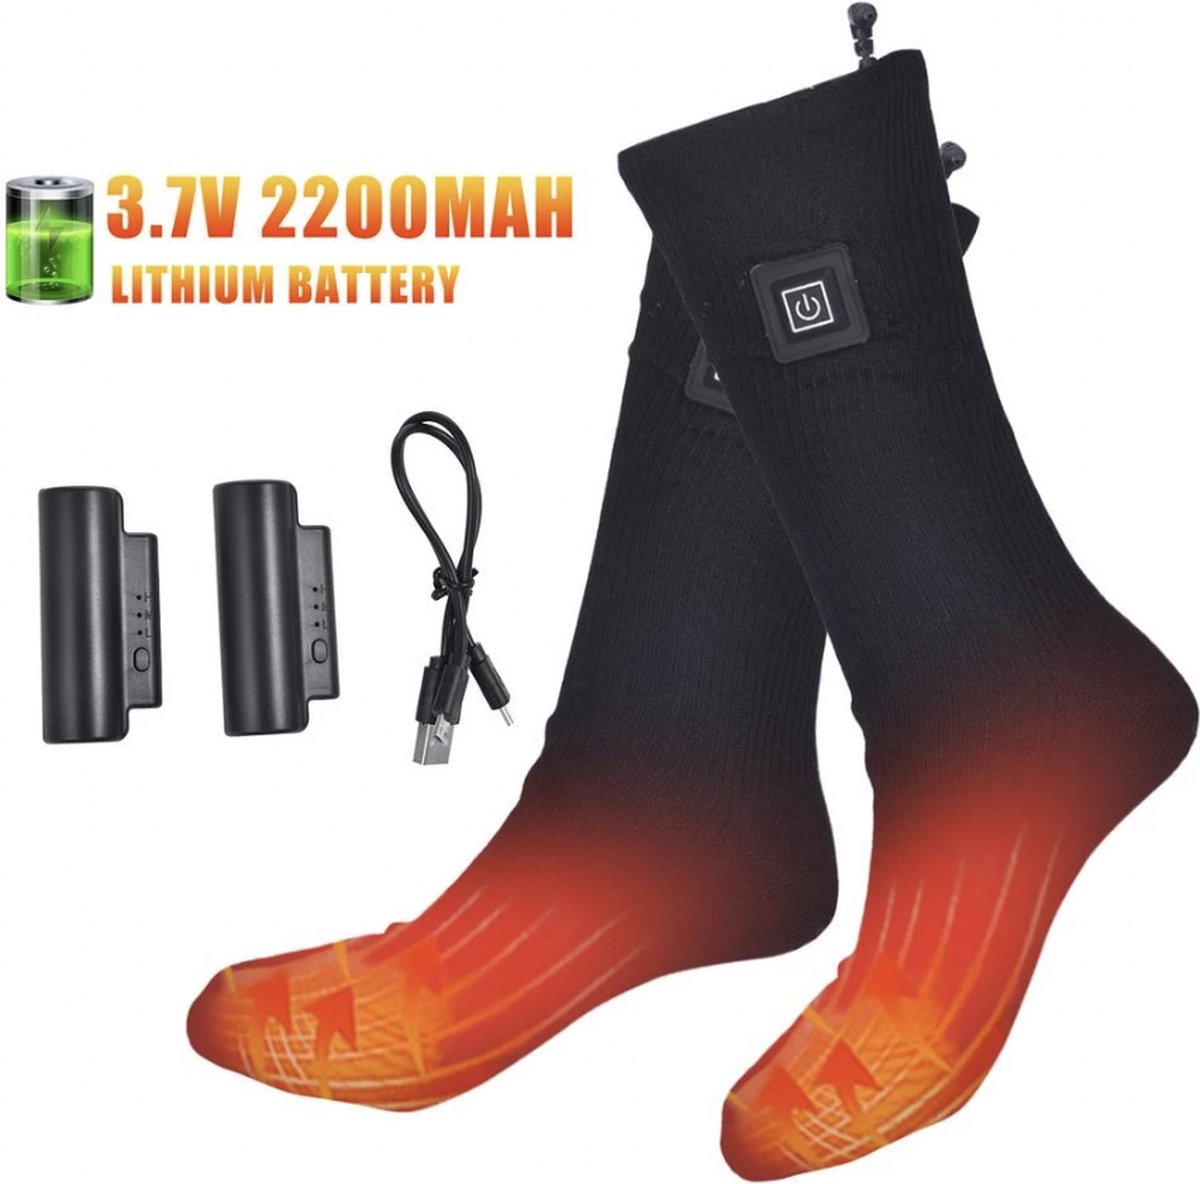 Elektrische verwarmde sokken met oplaadbare batterij- maat 38-42